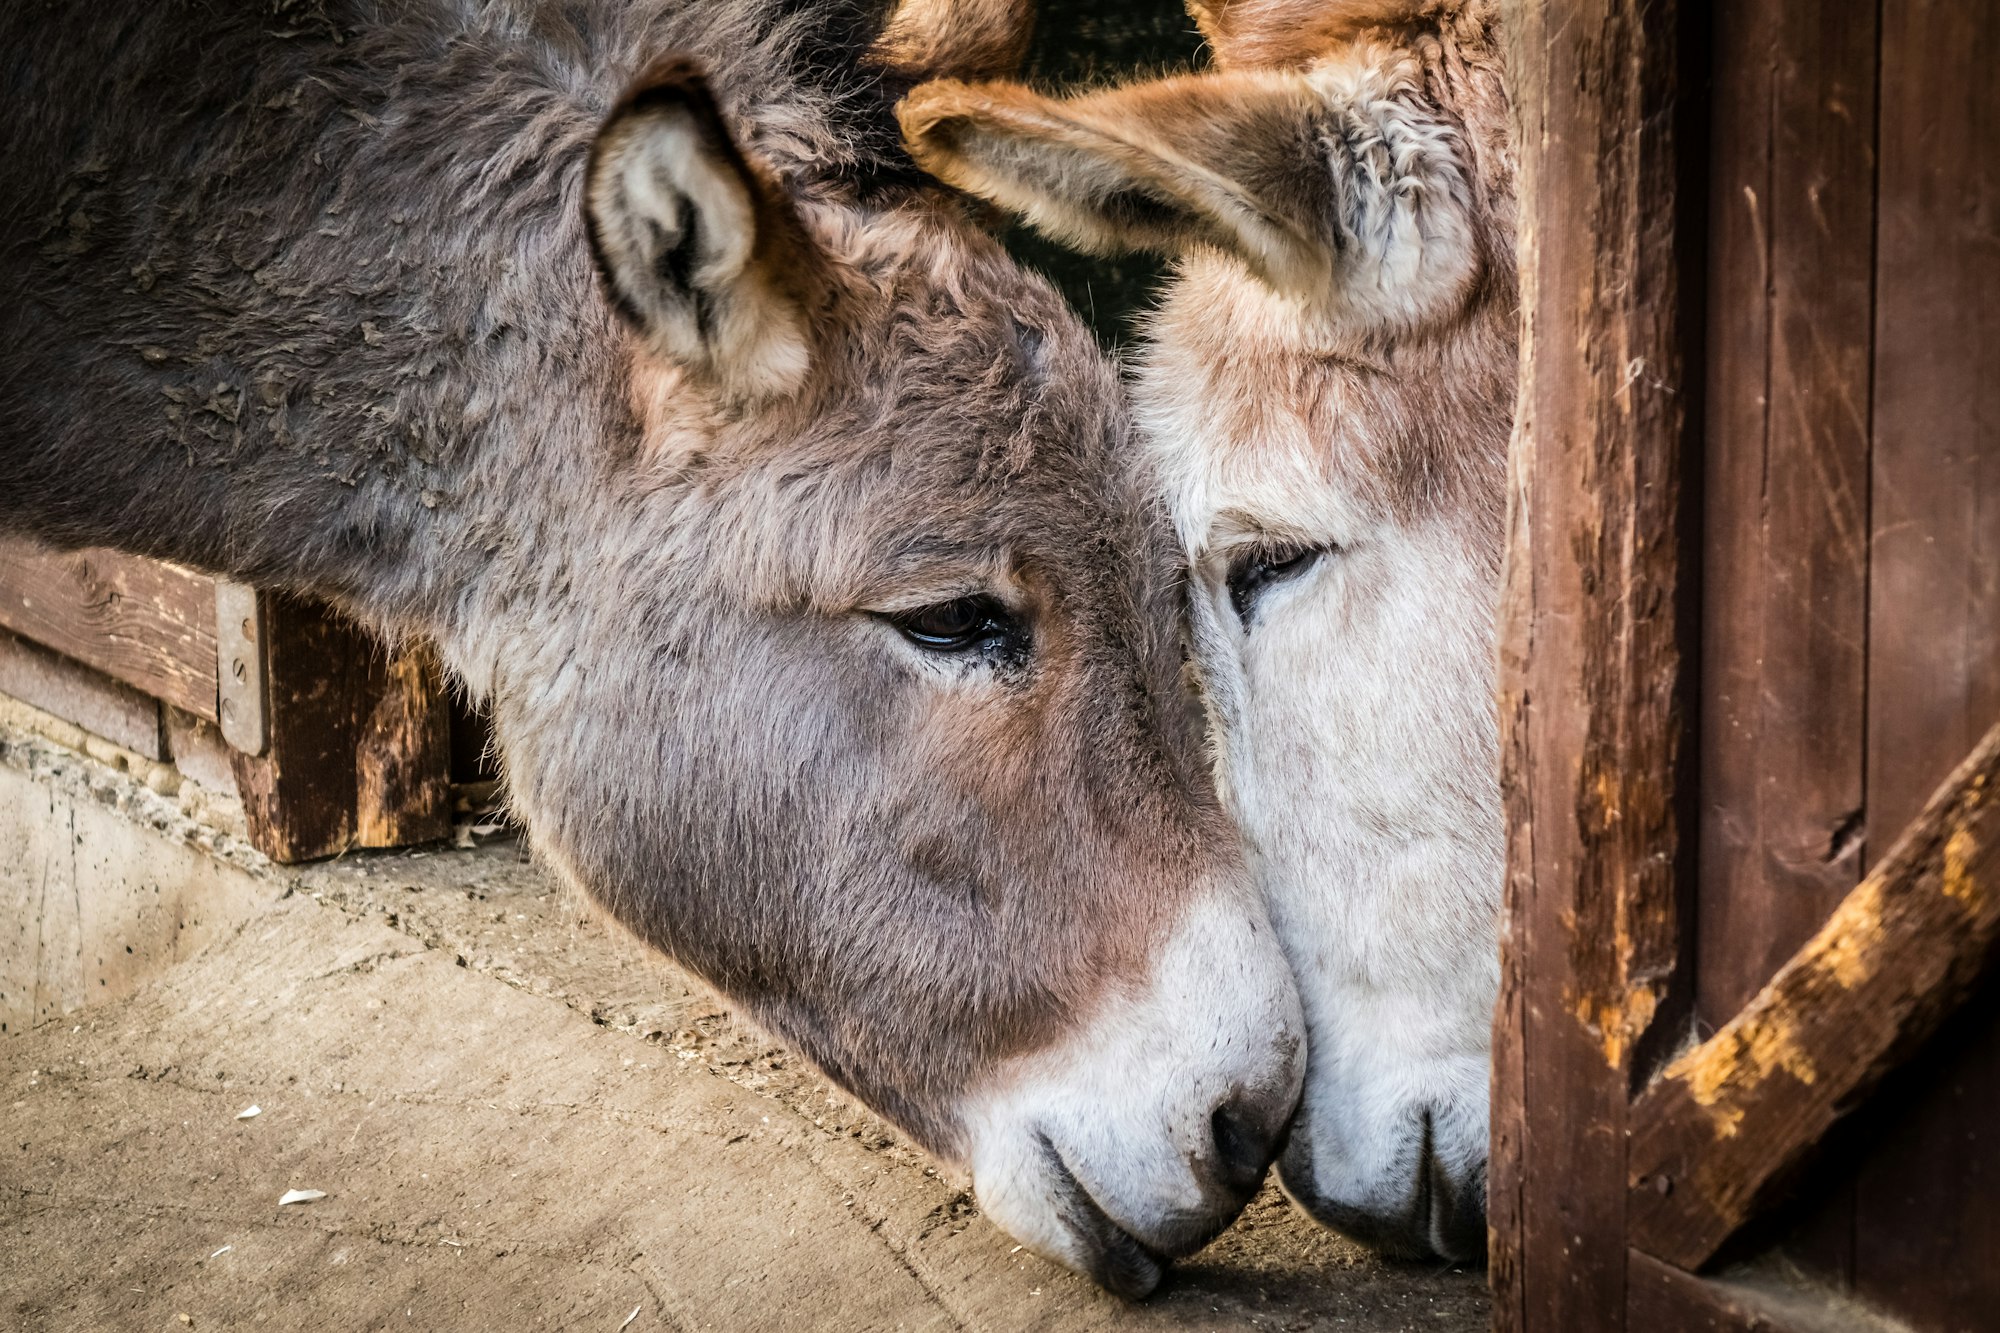 Donkey in love